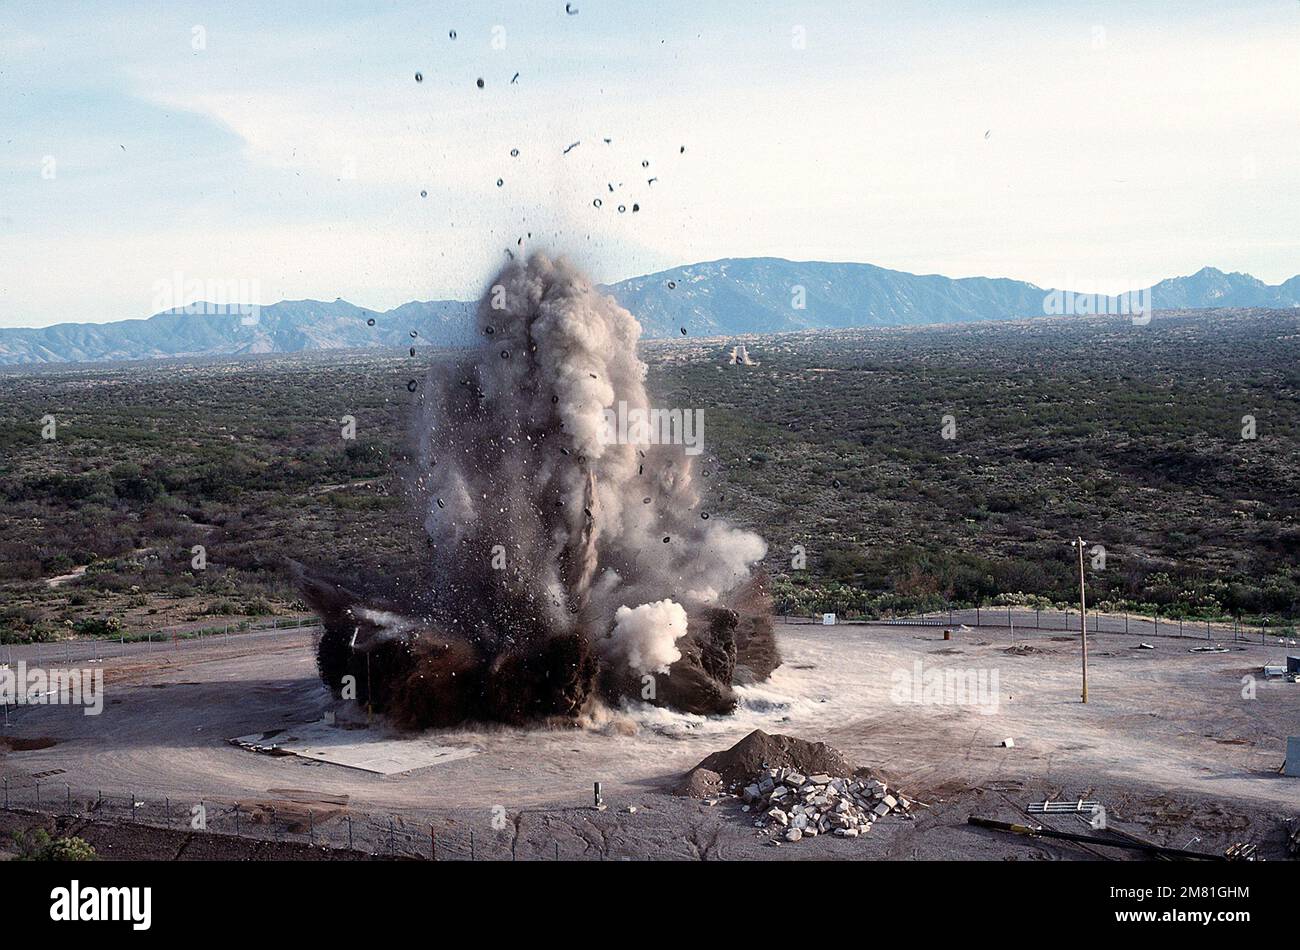 Une vue aérienne d'un silo de missiles Titan II qui est soufflé par des experts en démolition conformément au Traité sur la limitation des armements stratégiques (SALT II). Objet opération/série : BASE SALT II : base aérienne de Davis-Monthan État : Arizona (AZ) pays : États-Unis d'Amérique (USA) Banque D'Images